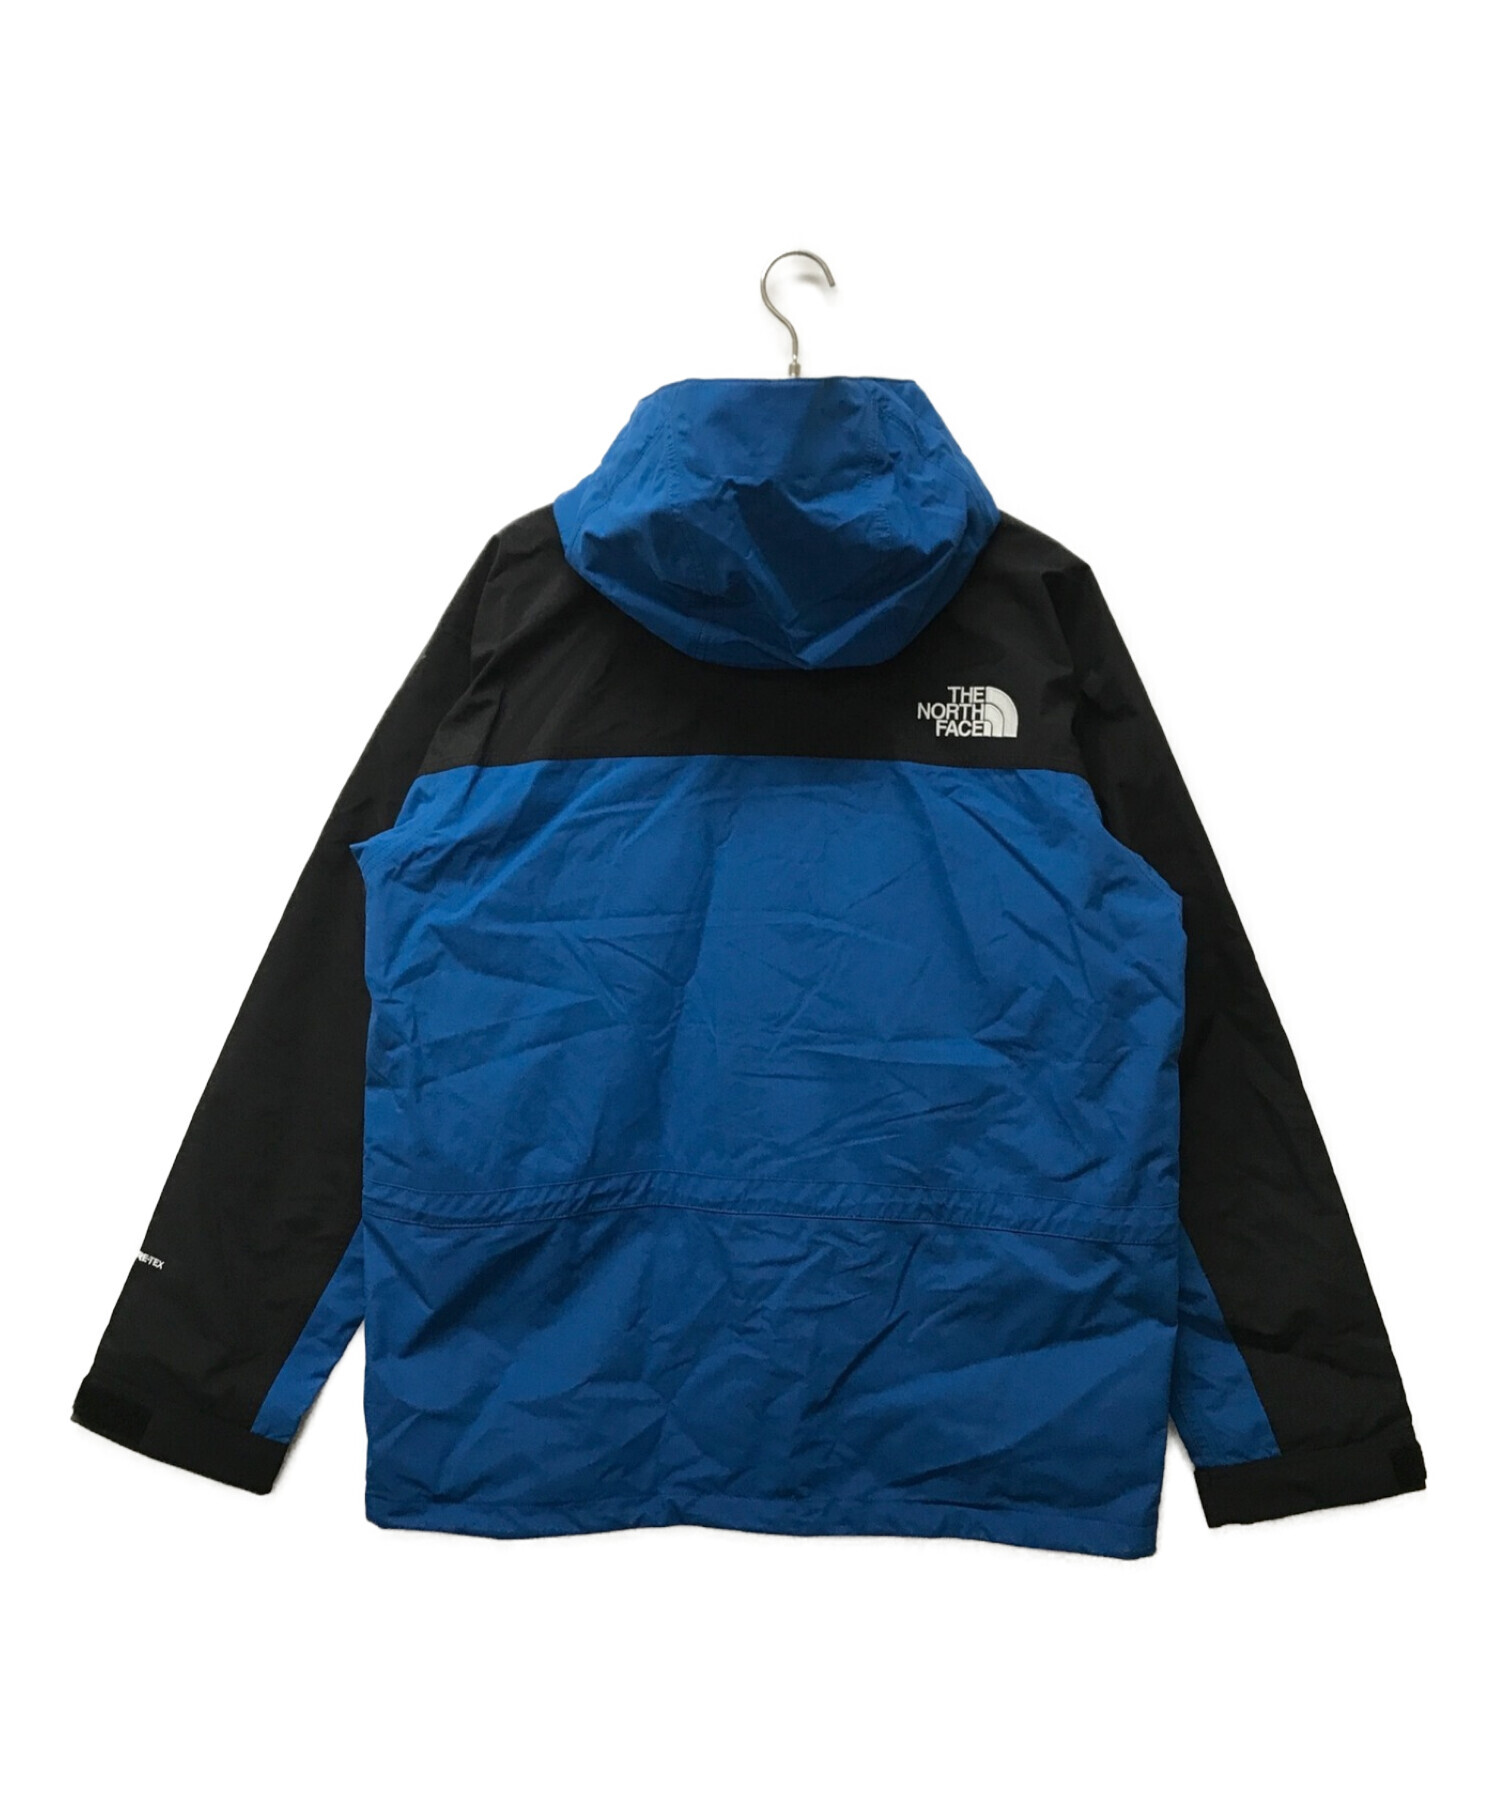 XXL The North Face 1990 mountain jacketジャケット/アウター